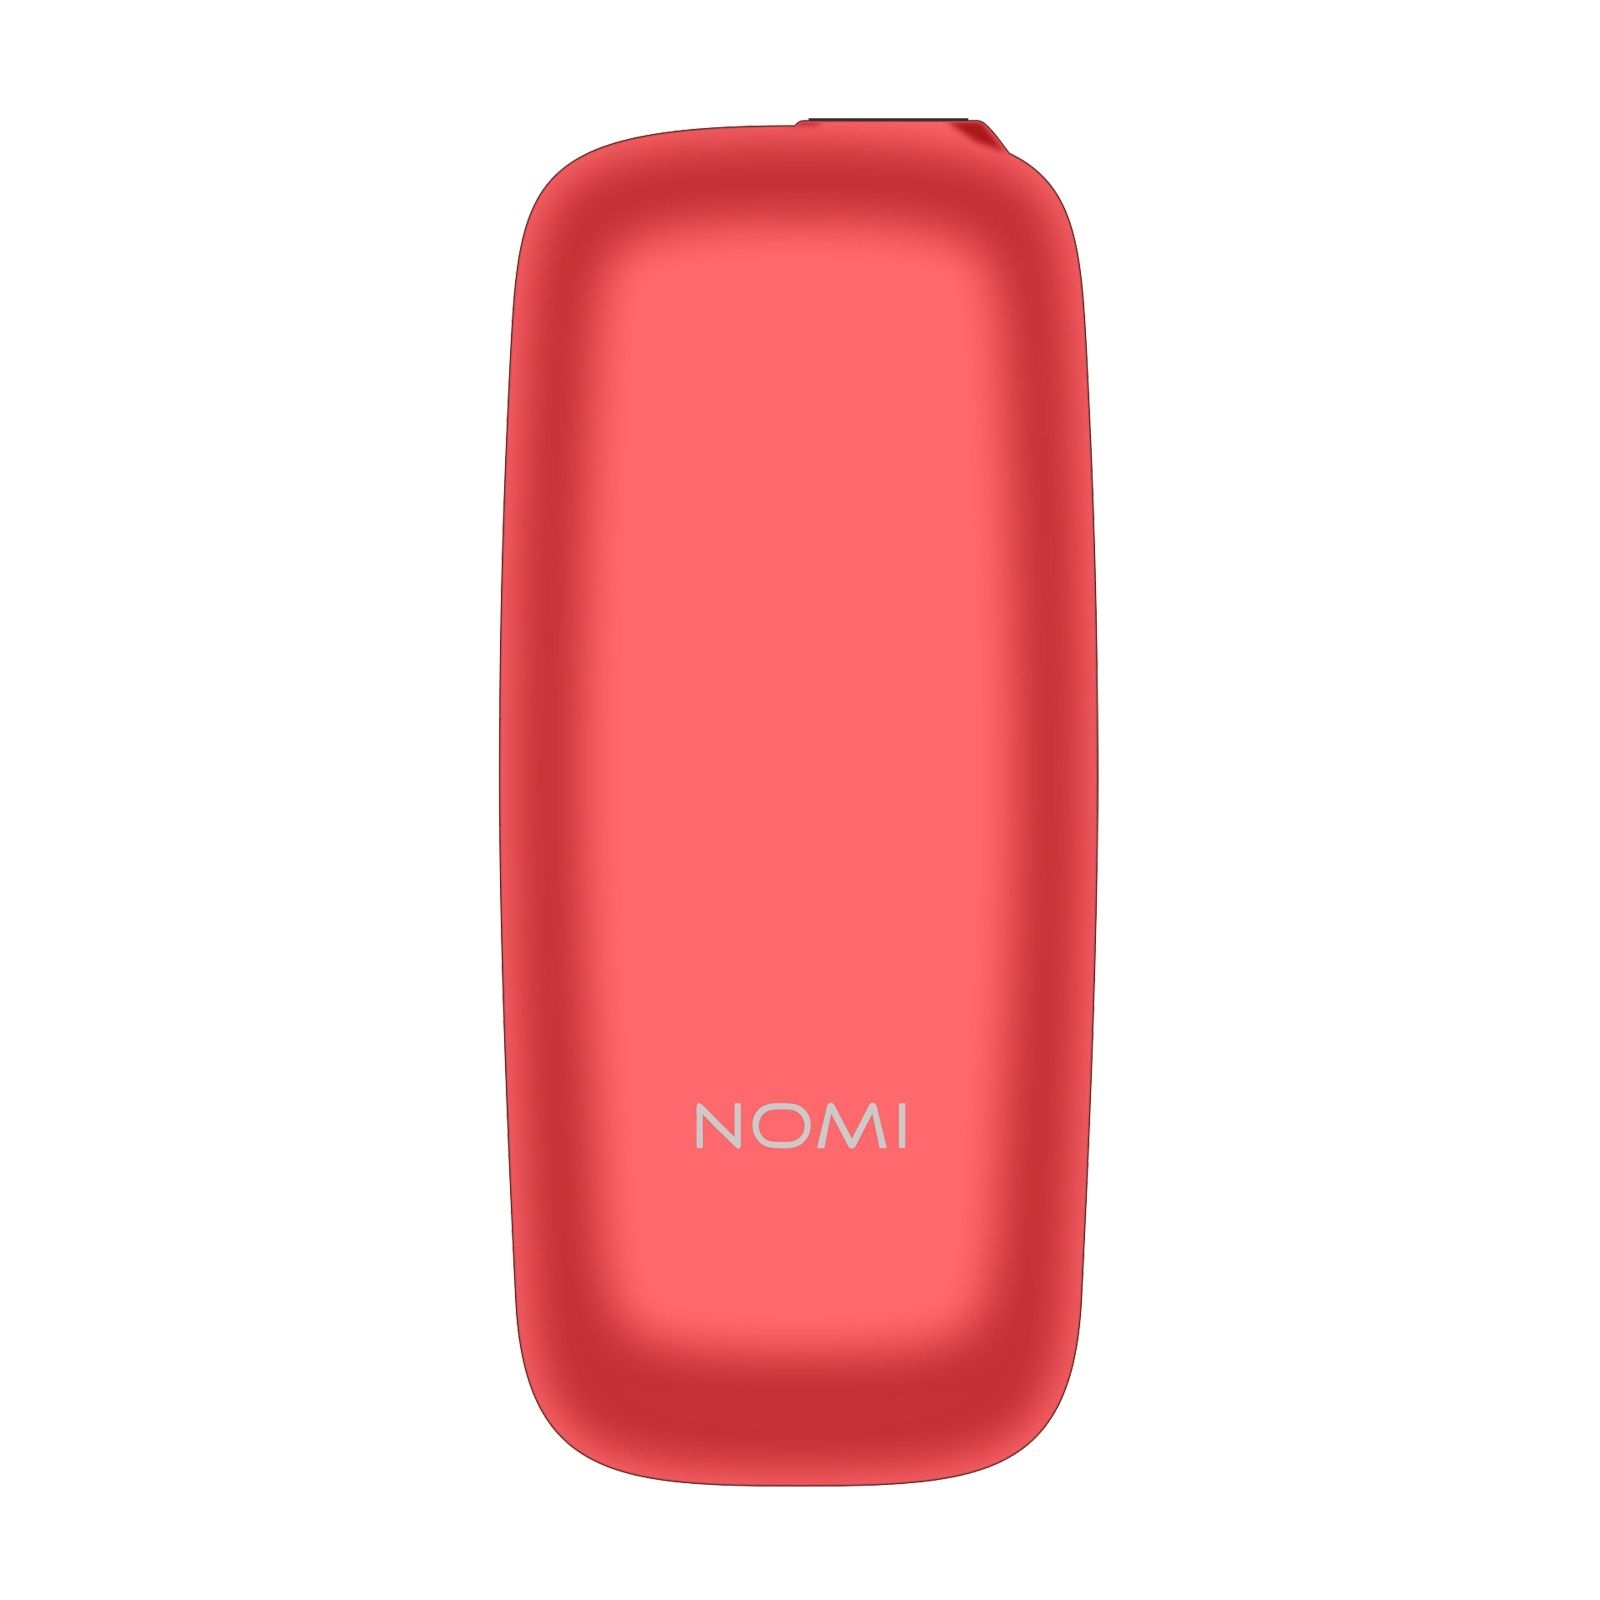 Мобильный телефон Nomi i1440 Black изображение 3